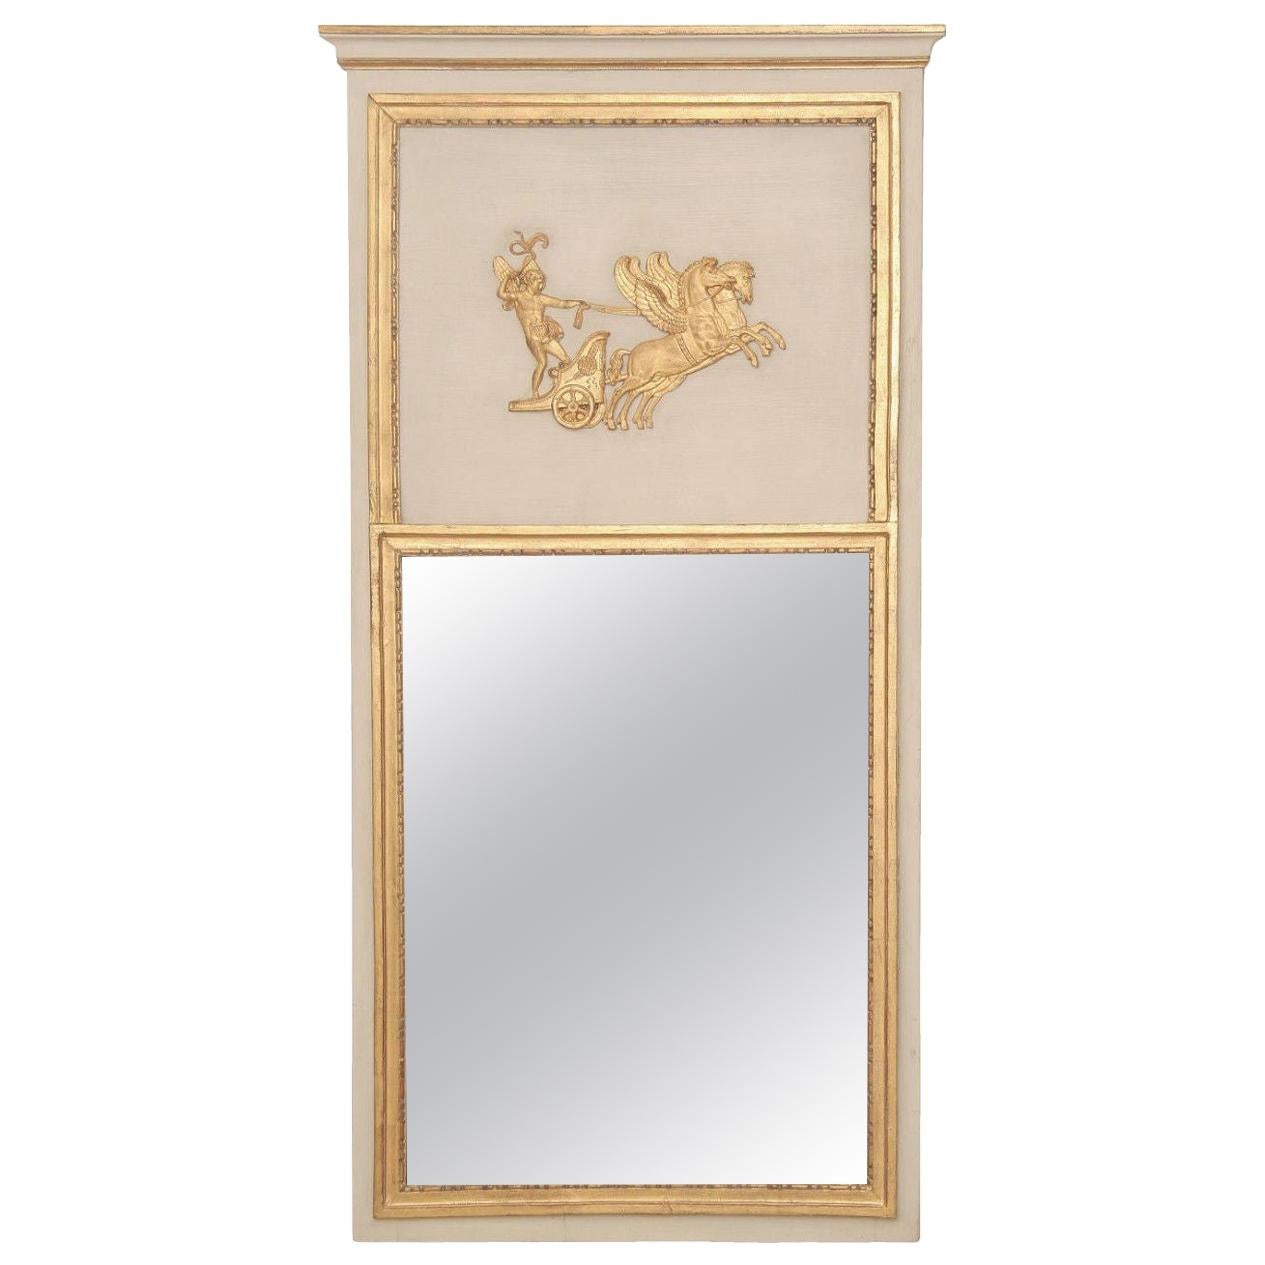 Trumeau/miroir français du XVIIIe siècle:: de style Directoire:: peint en blanc et or